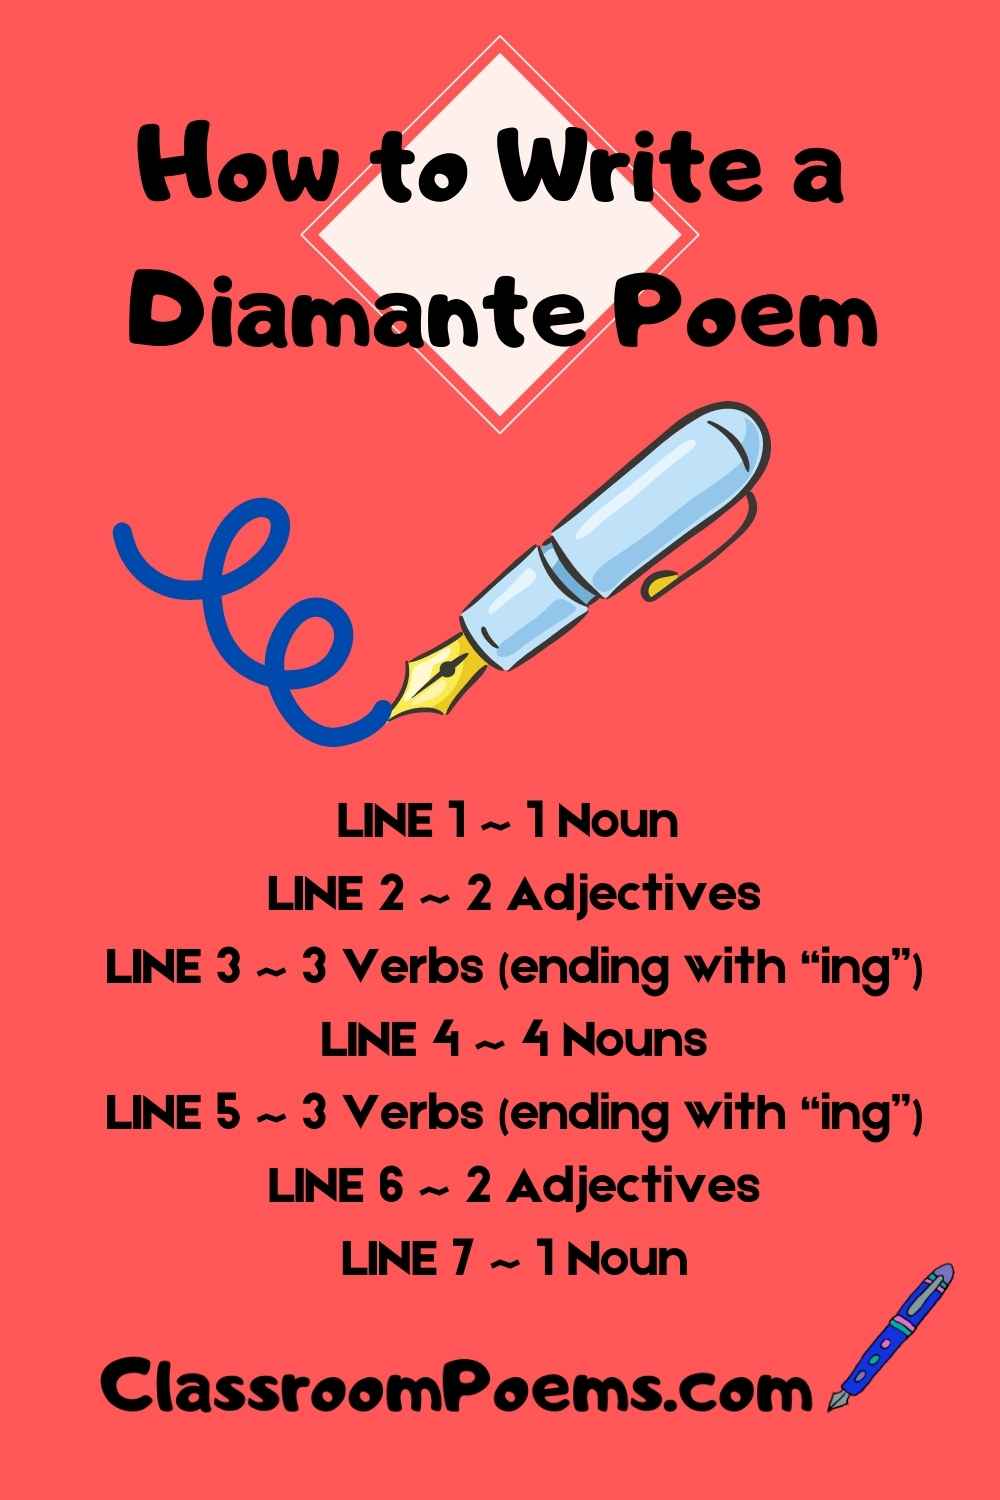 How to Write a Diamante Poem